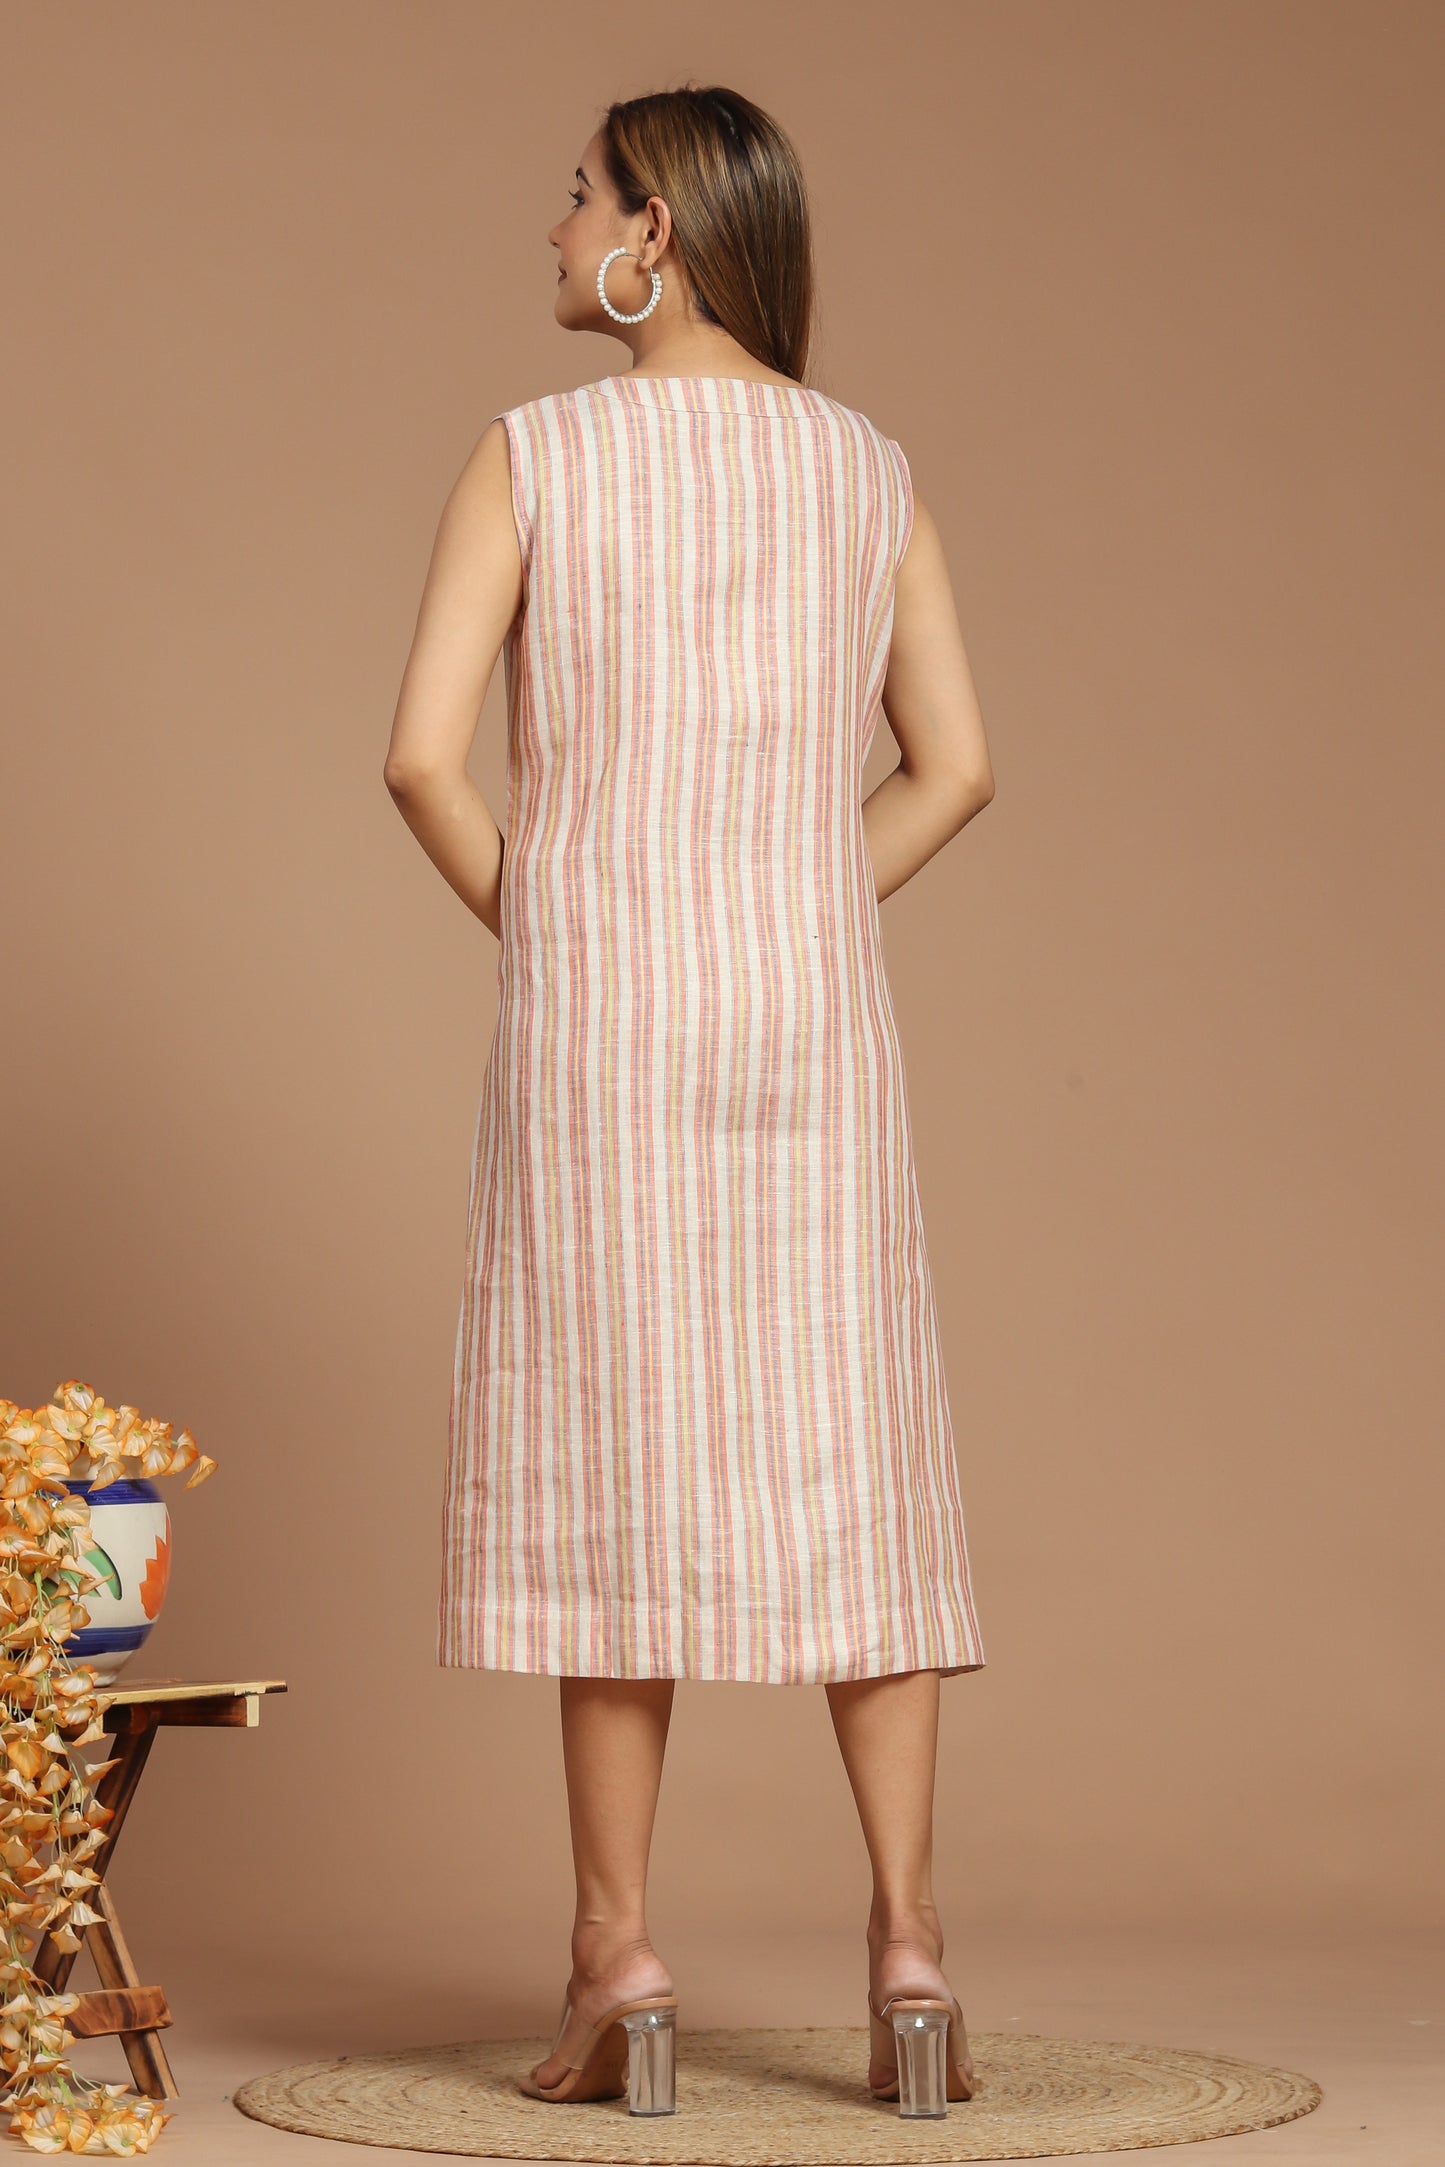 Weaved Linen Dress